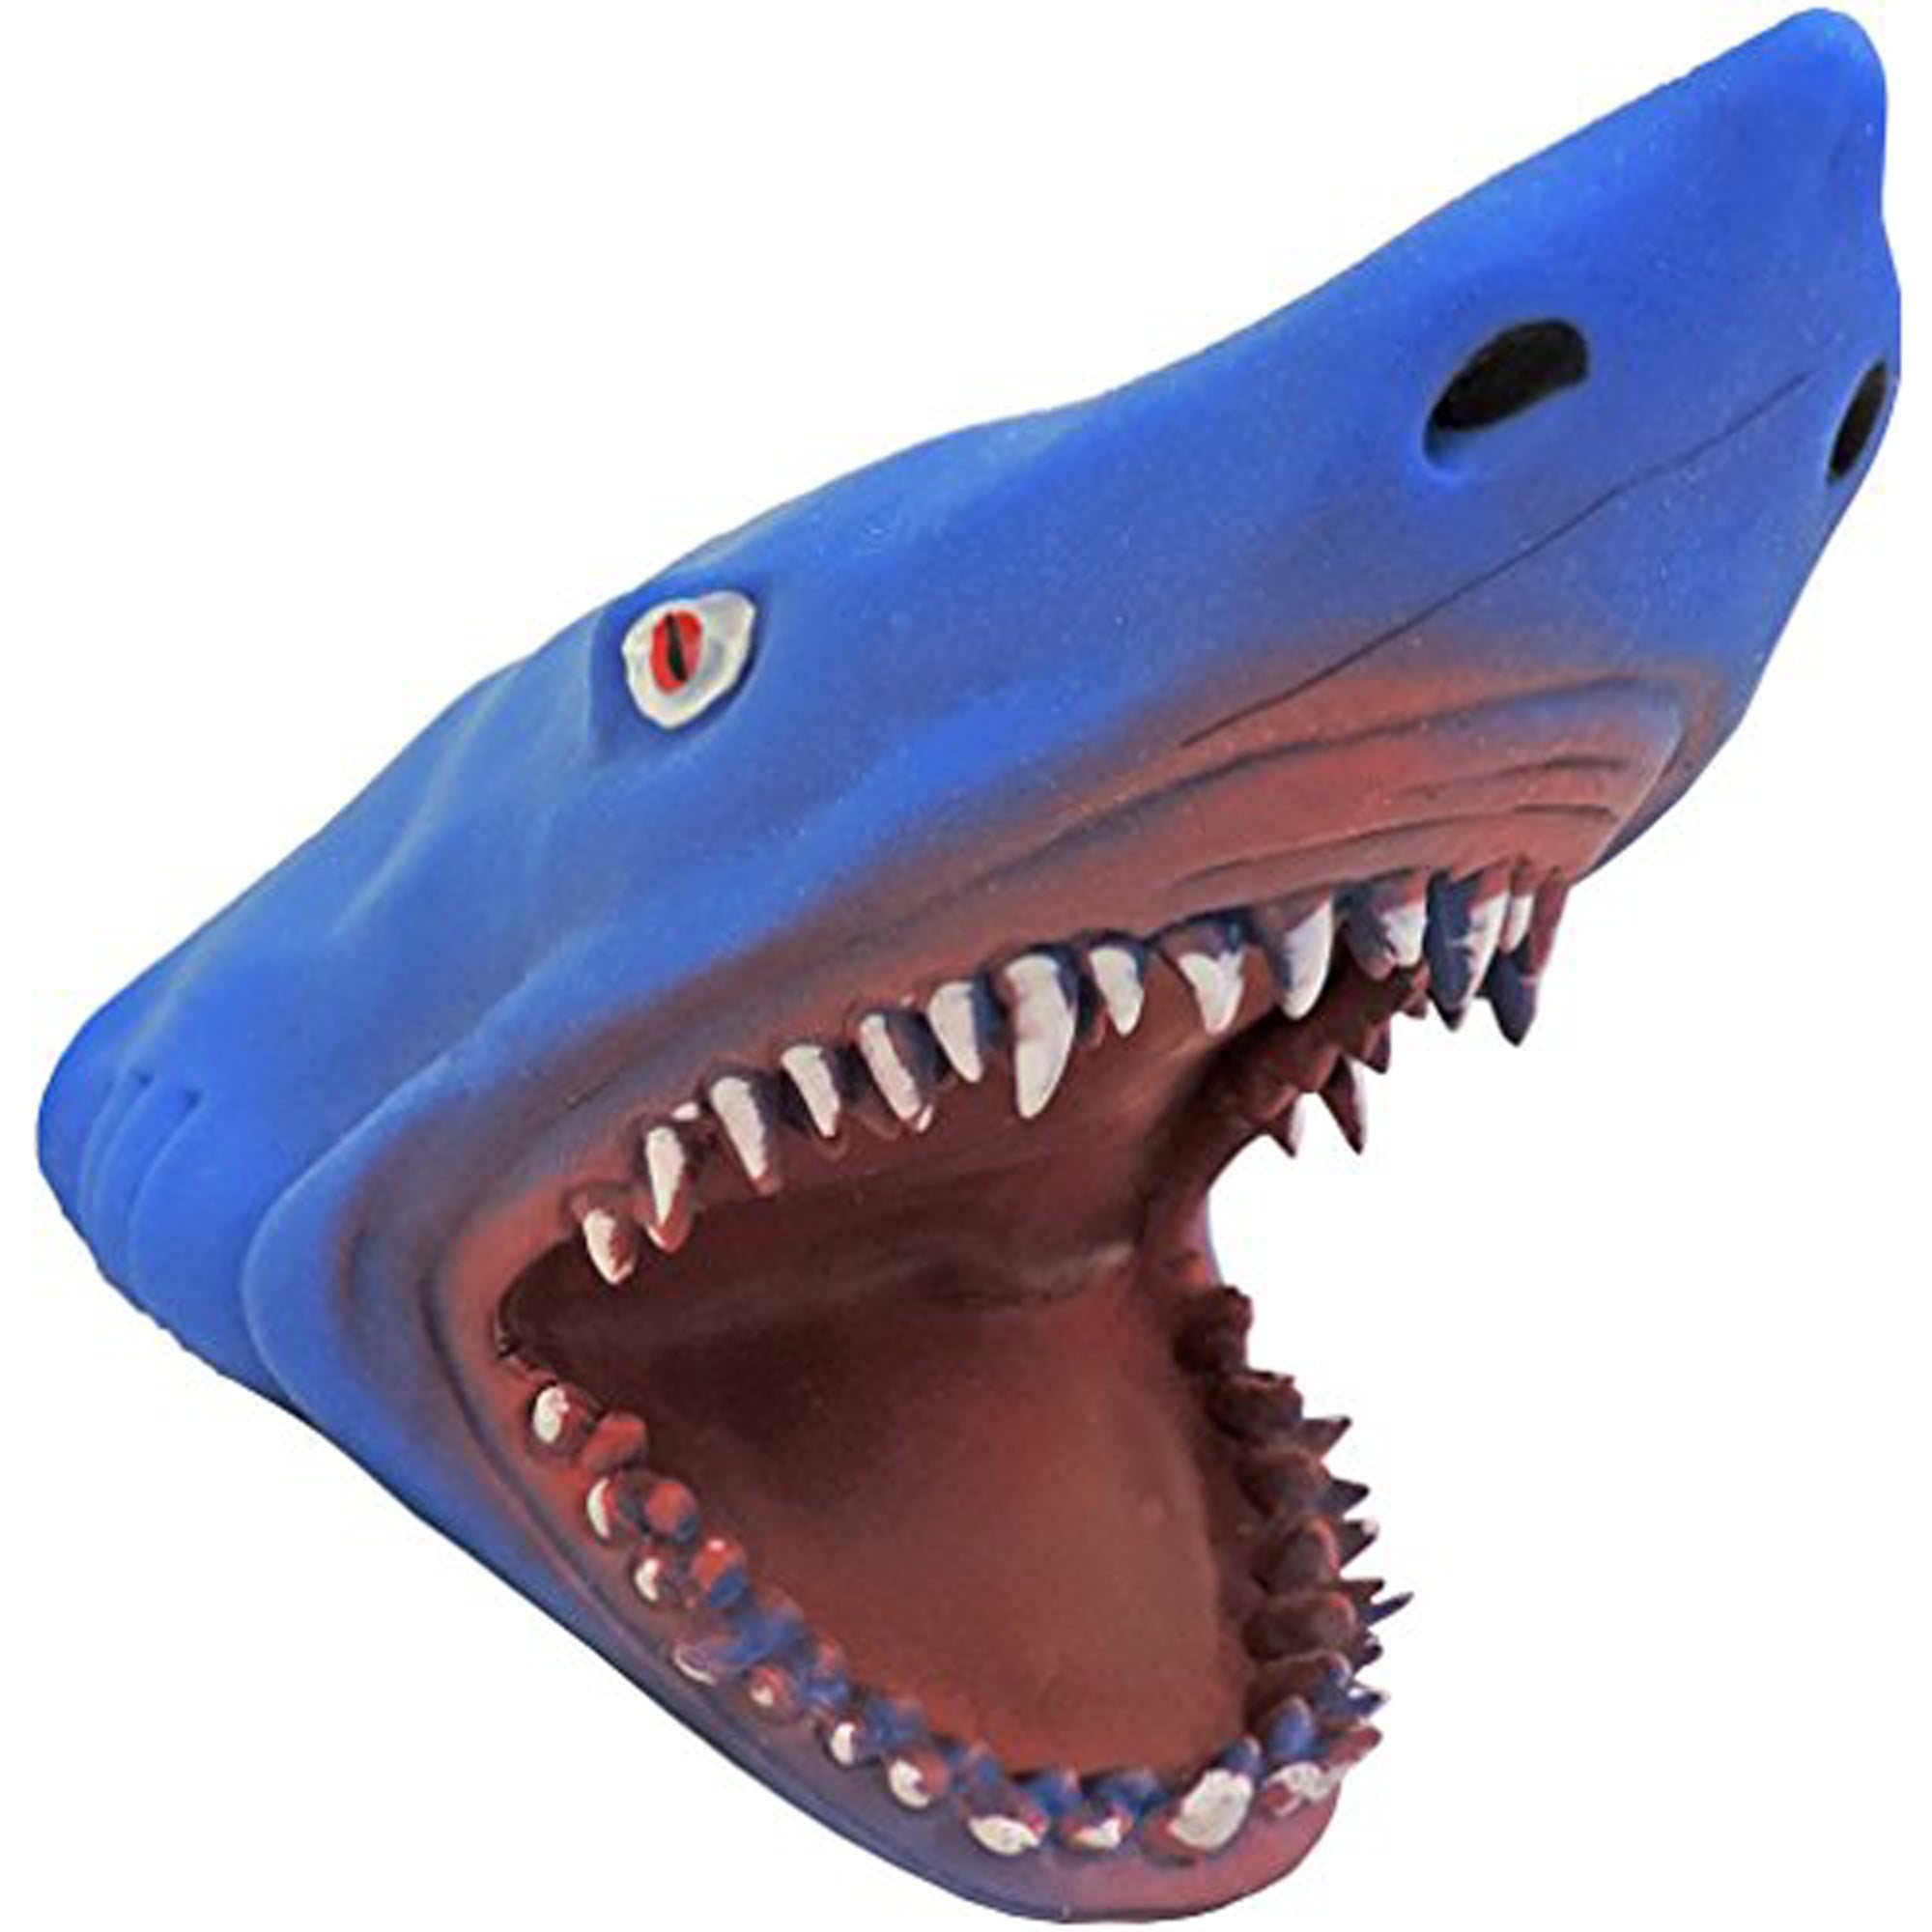 rubber shark hand puppet